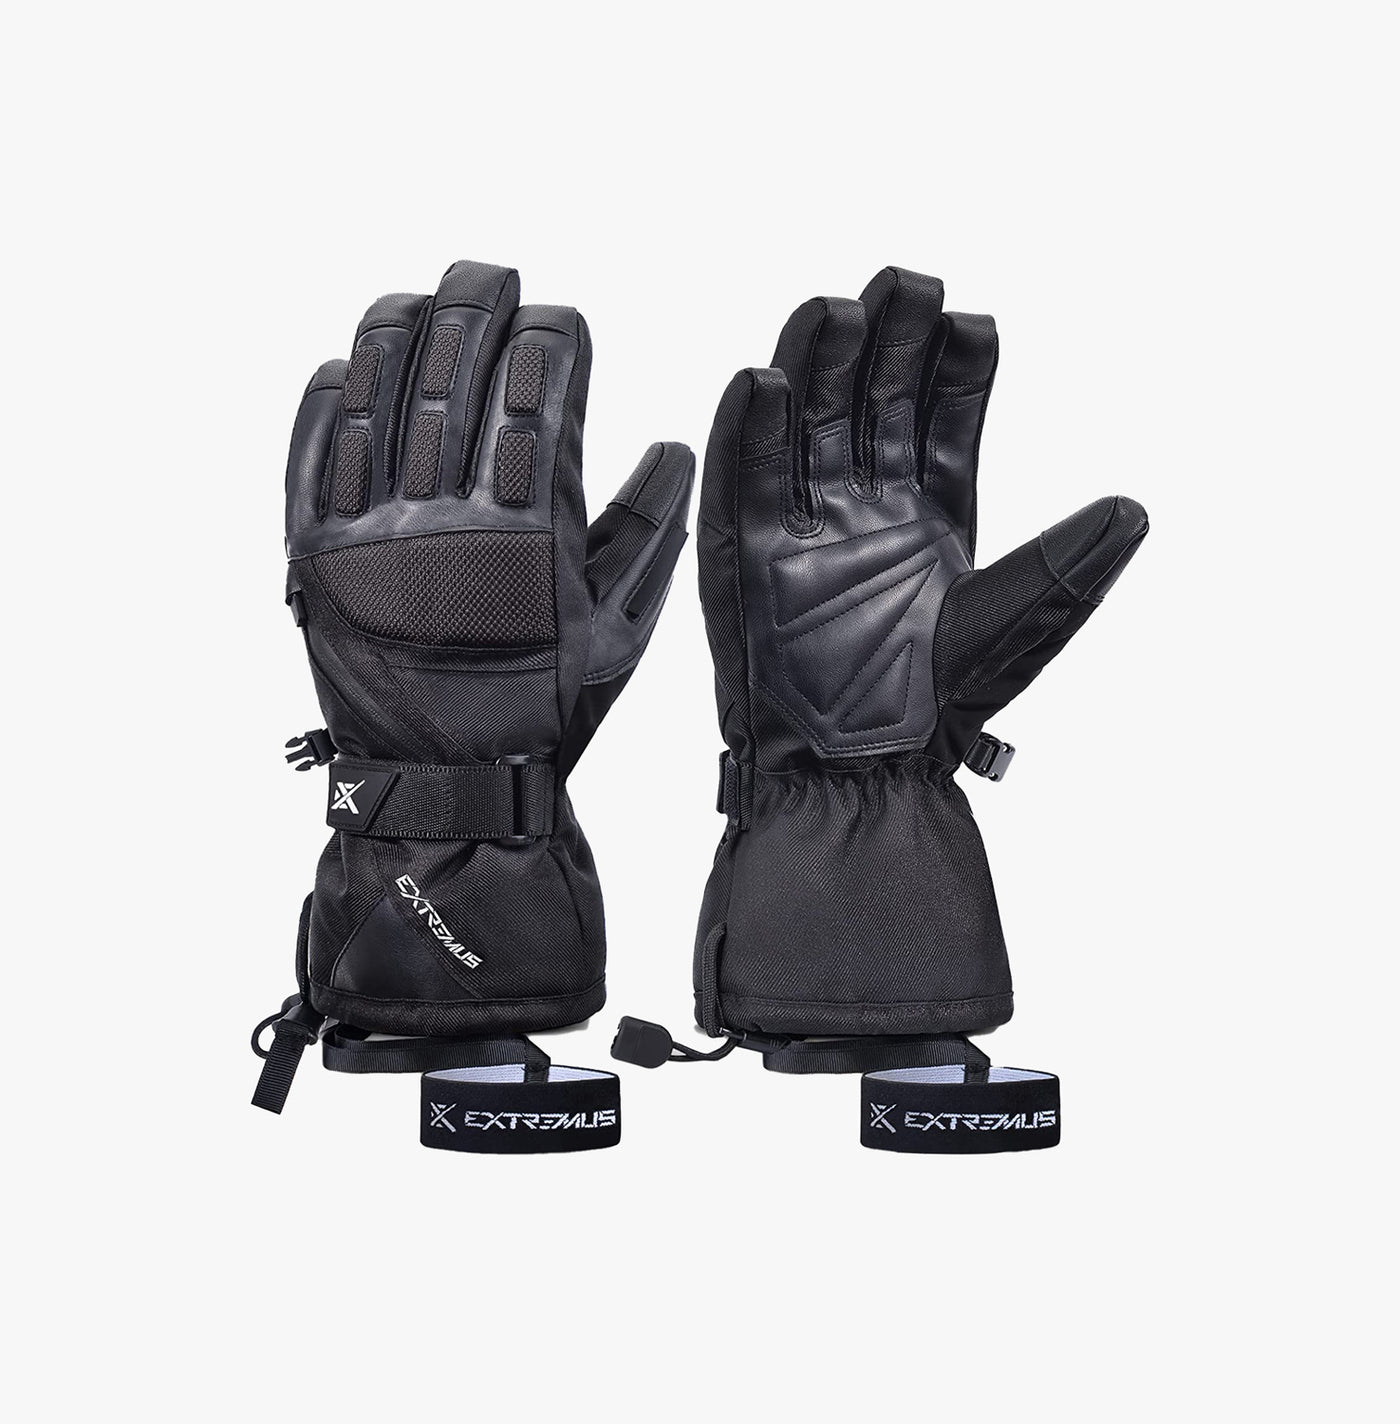 Outlook Peak Ski Gloves